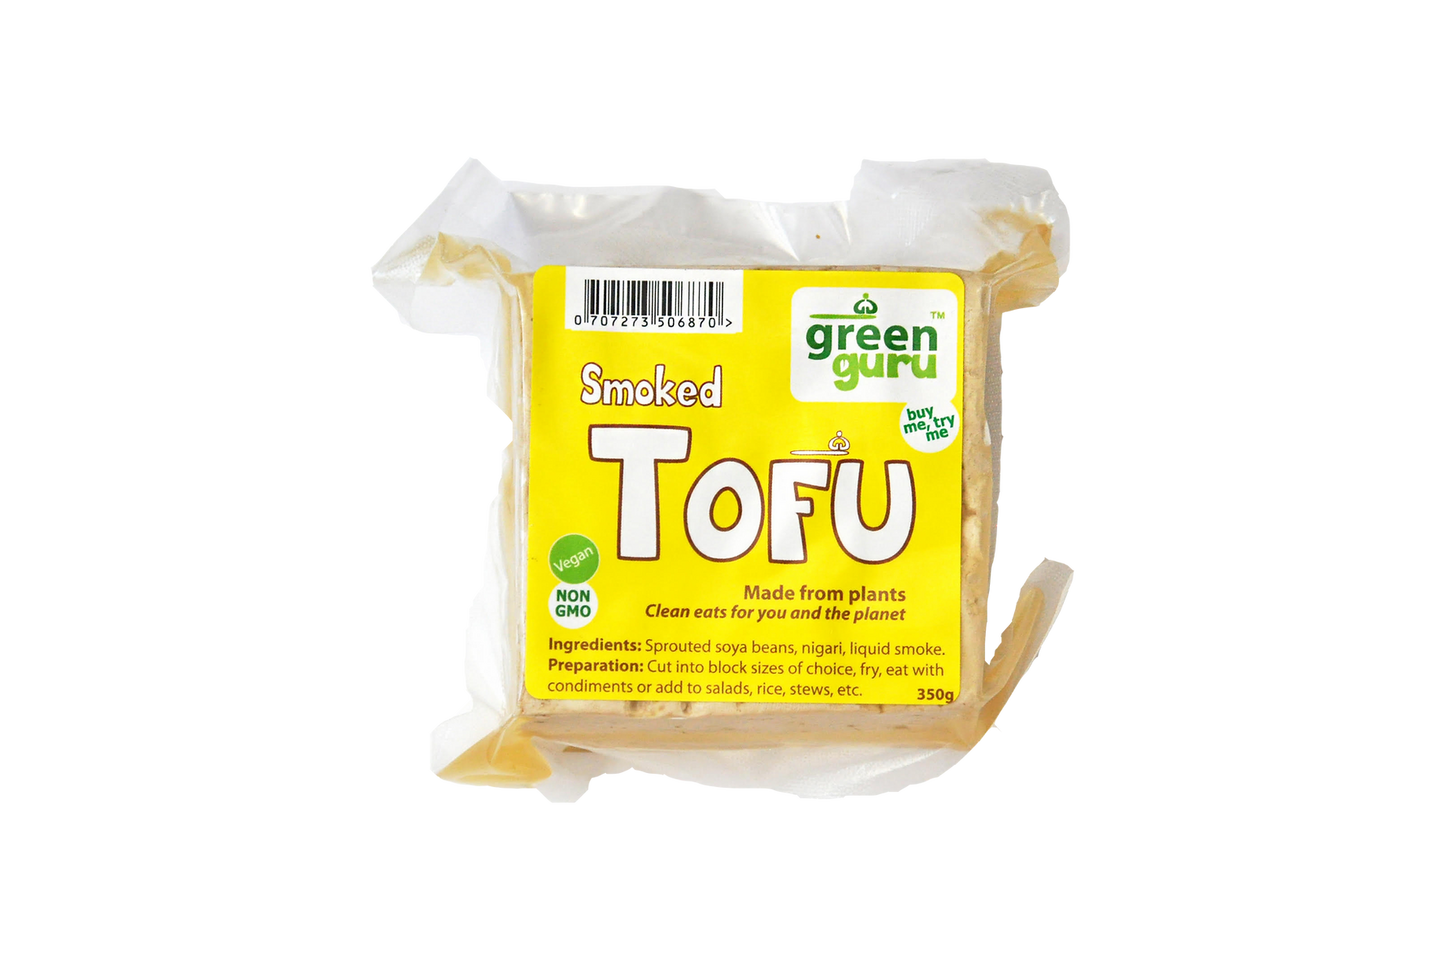 Green Guru Smoked Tofu